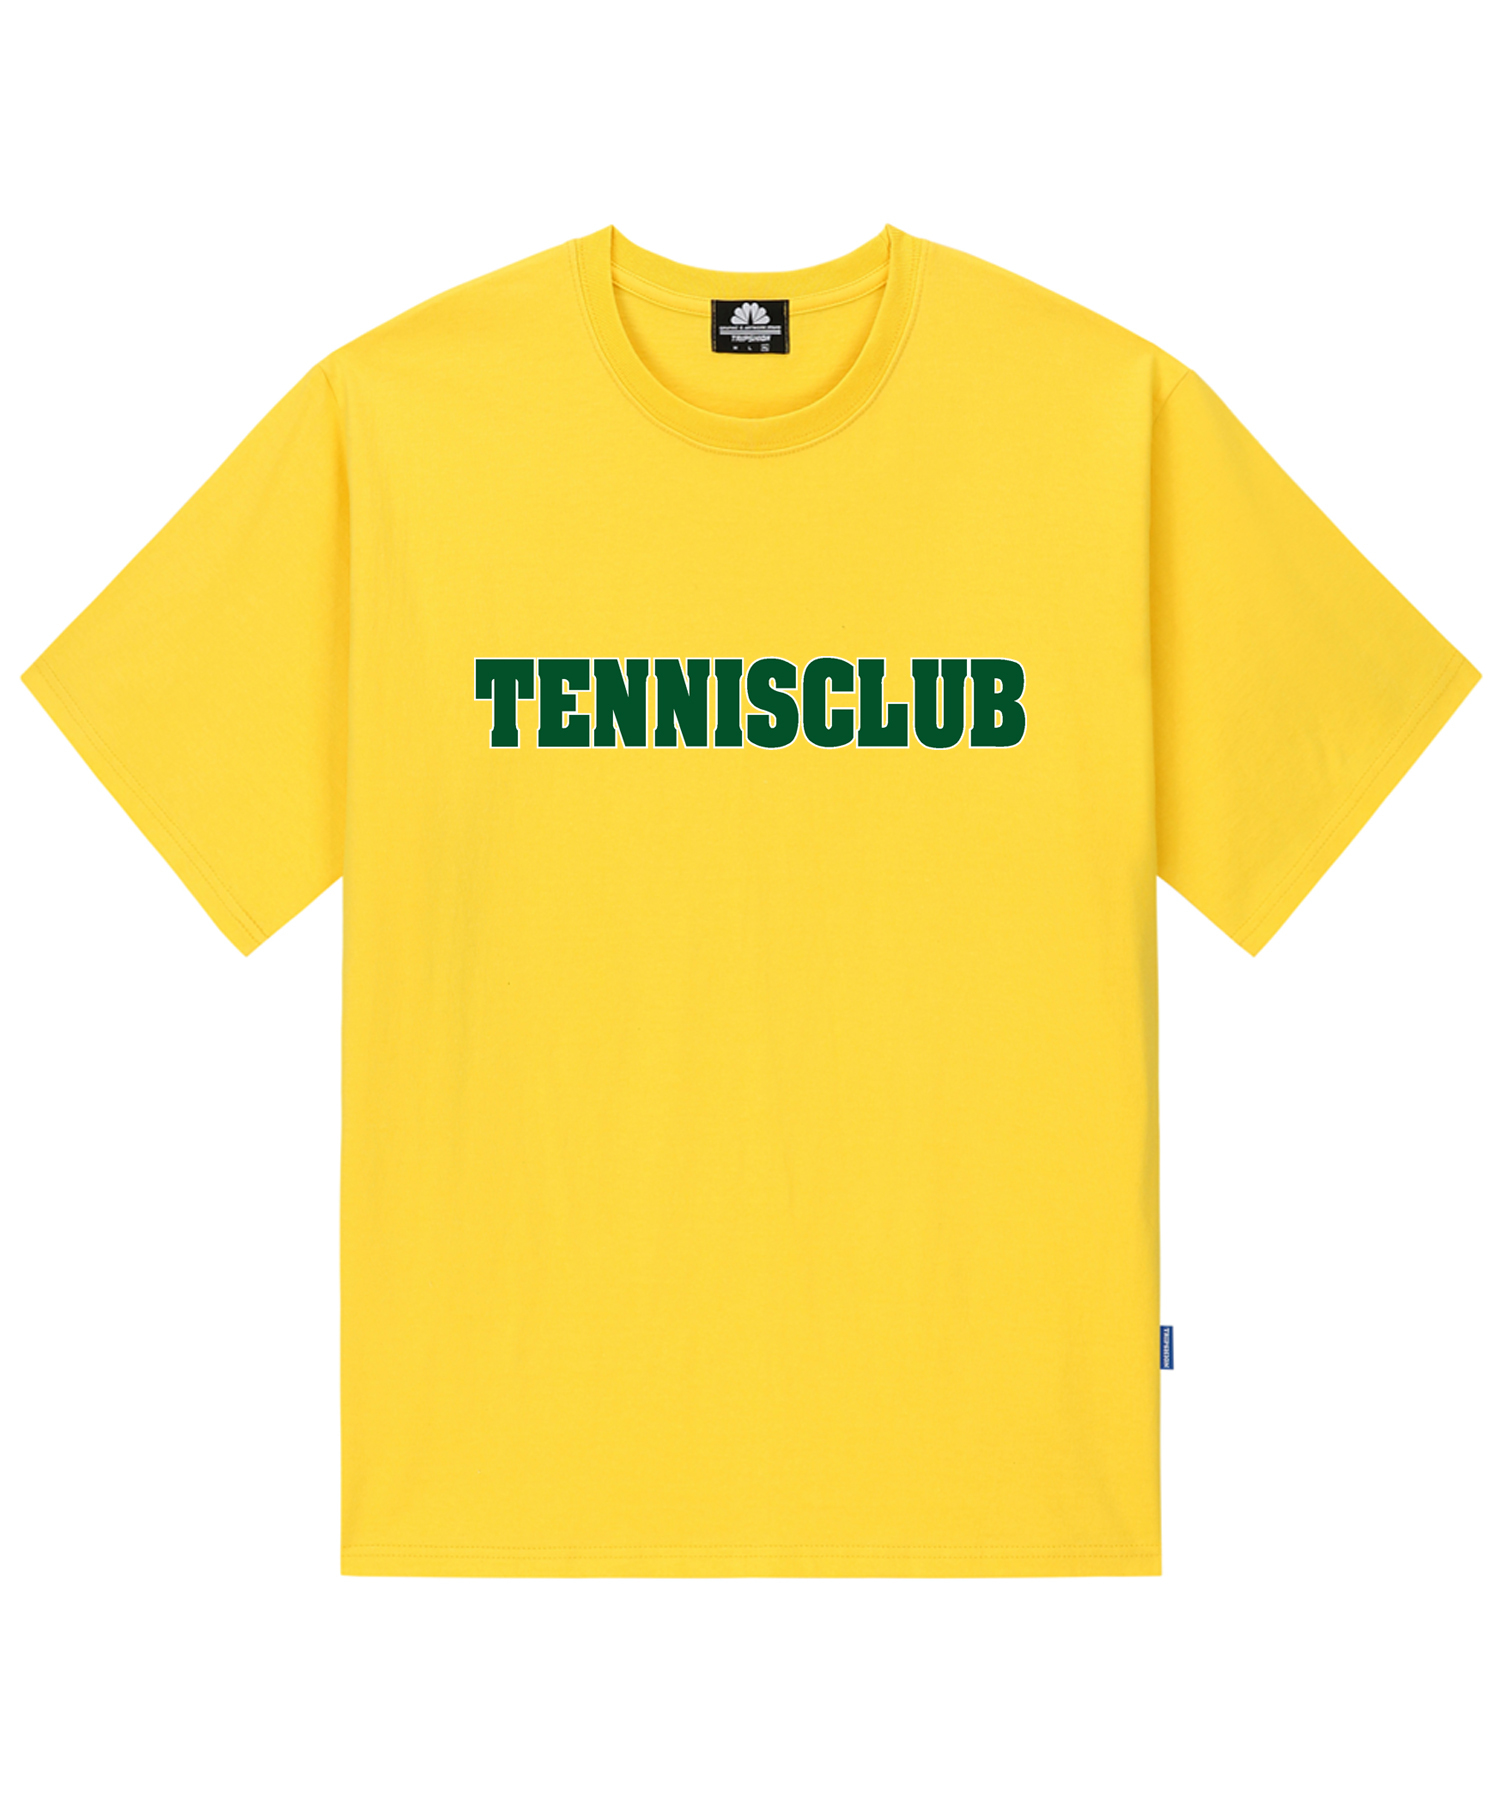 TENNIS CLUB T-SHIRTS - YELLOW